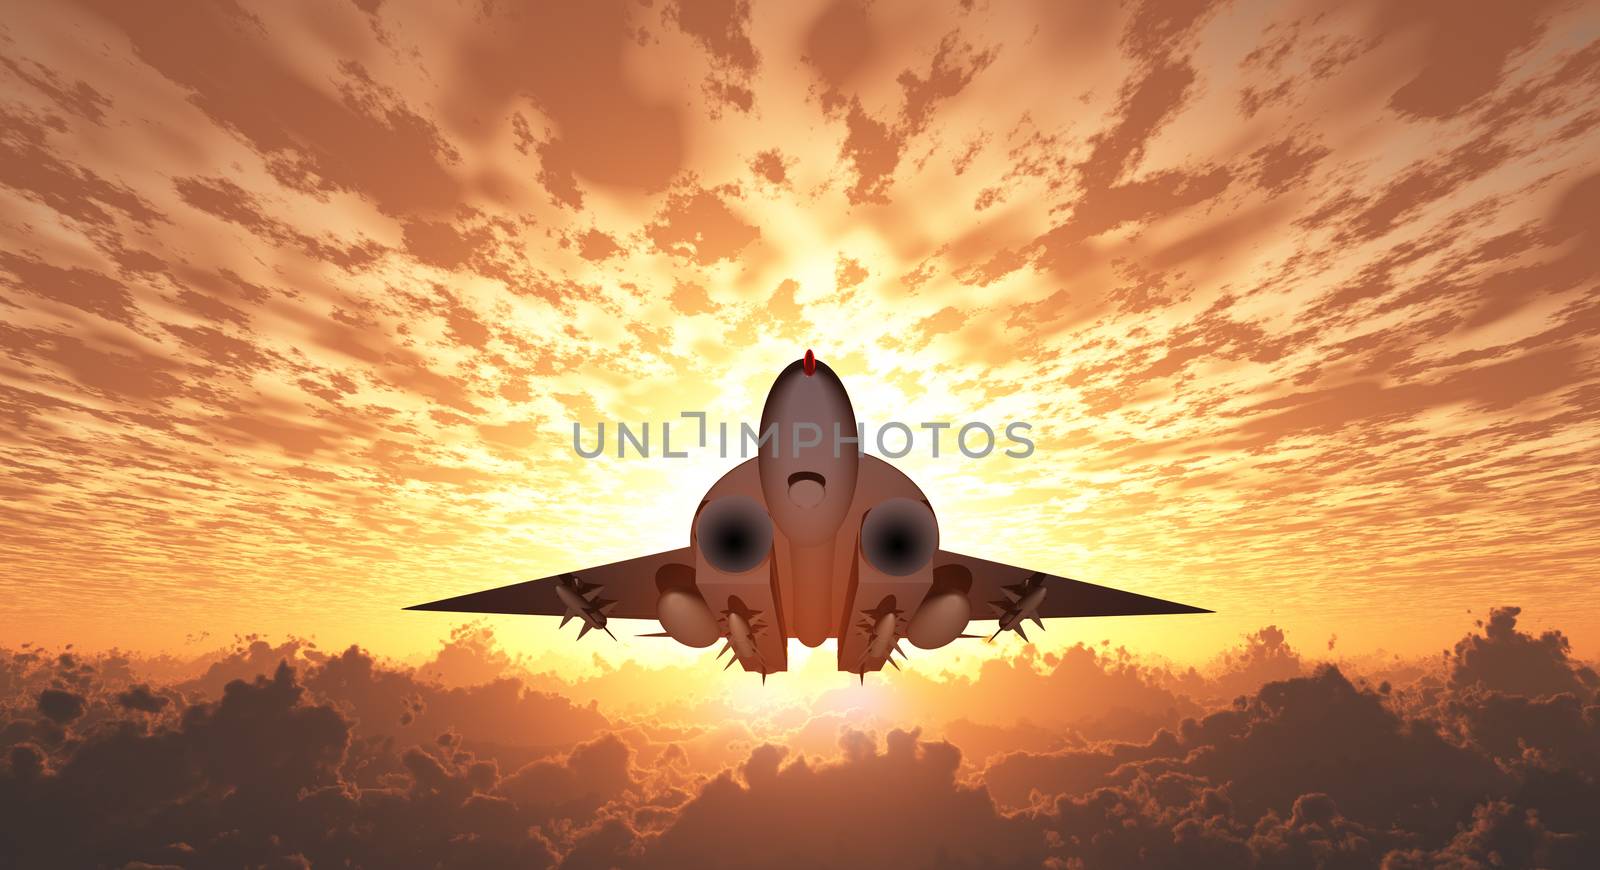 Military Jet in Flight Sunrise or sunset. 3D rendering